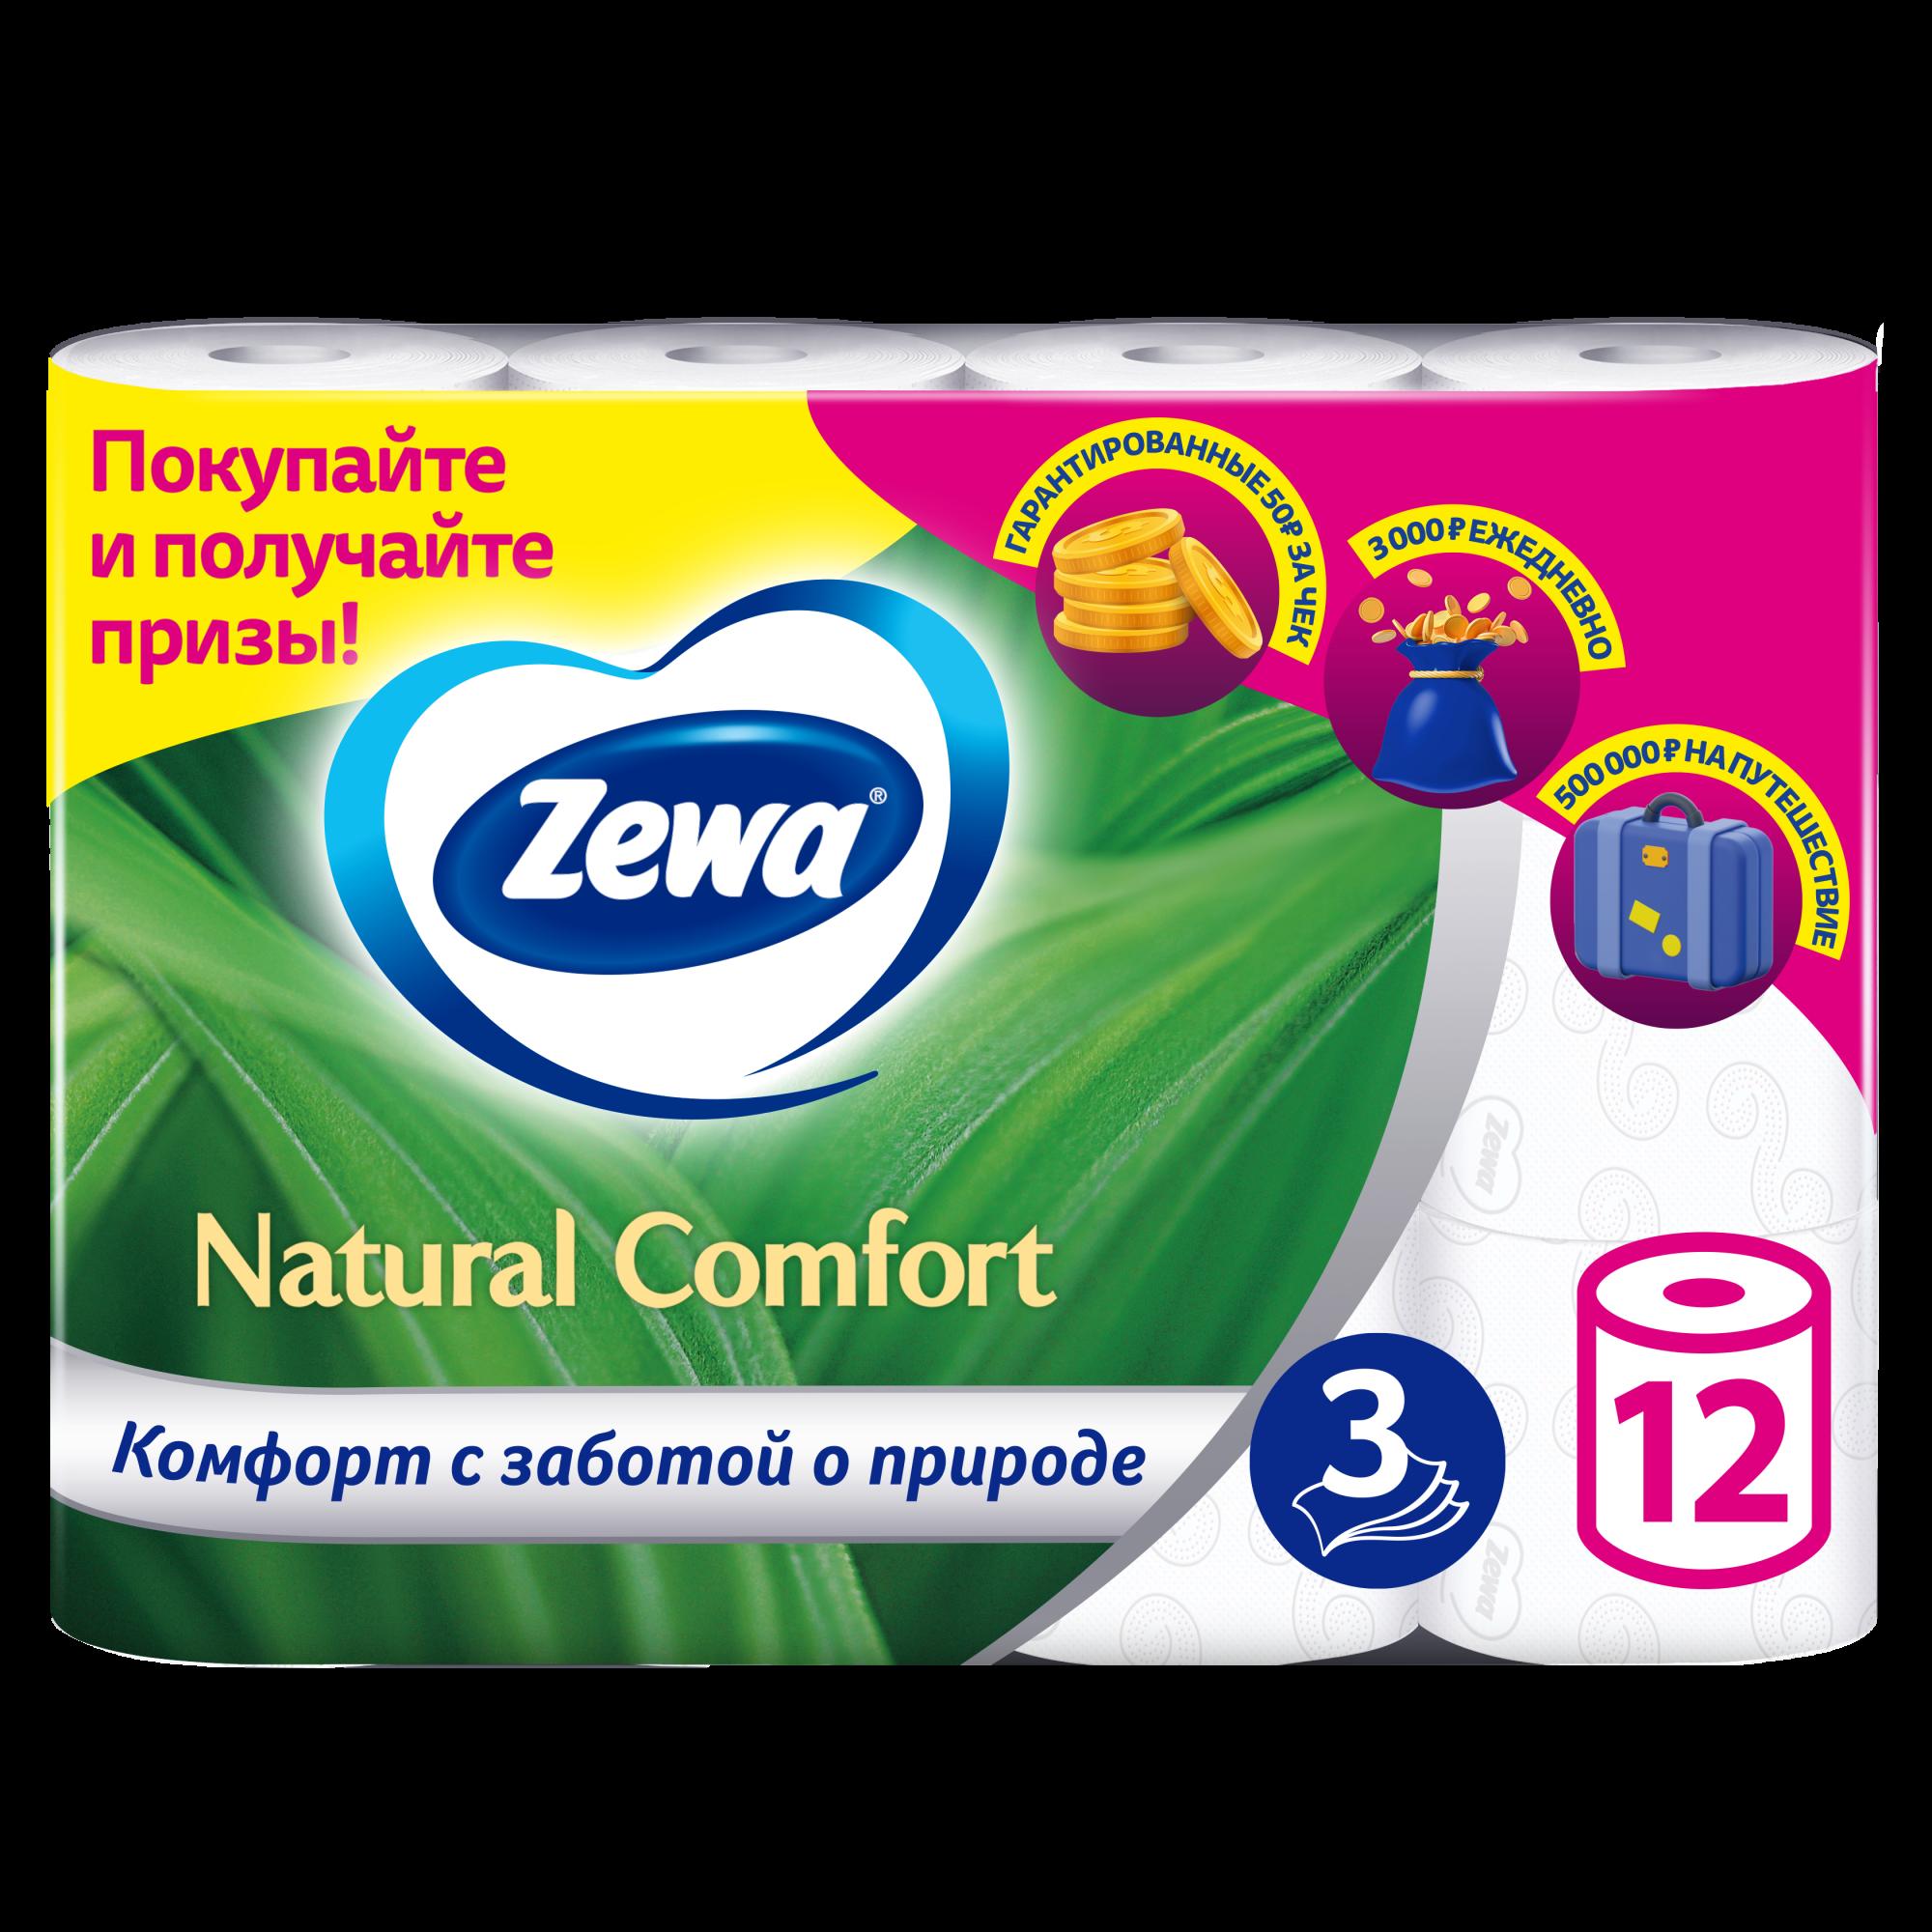 Туалетная бумага Zewa Natural Comfort, белая, 3 слоя, 12 рулонов